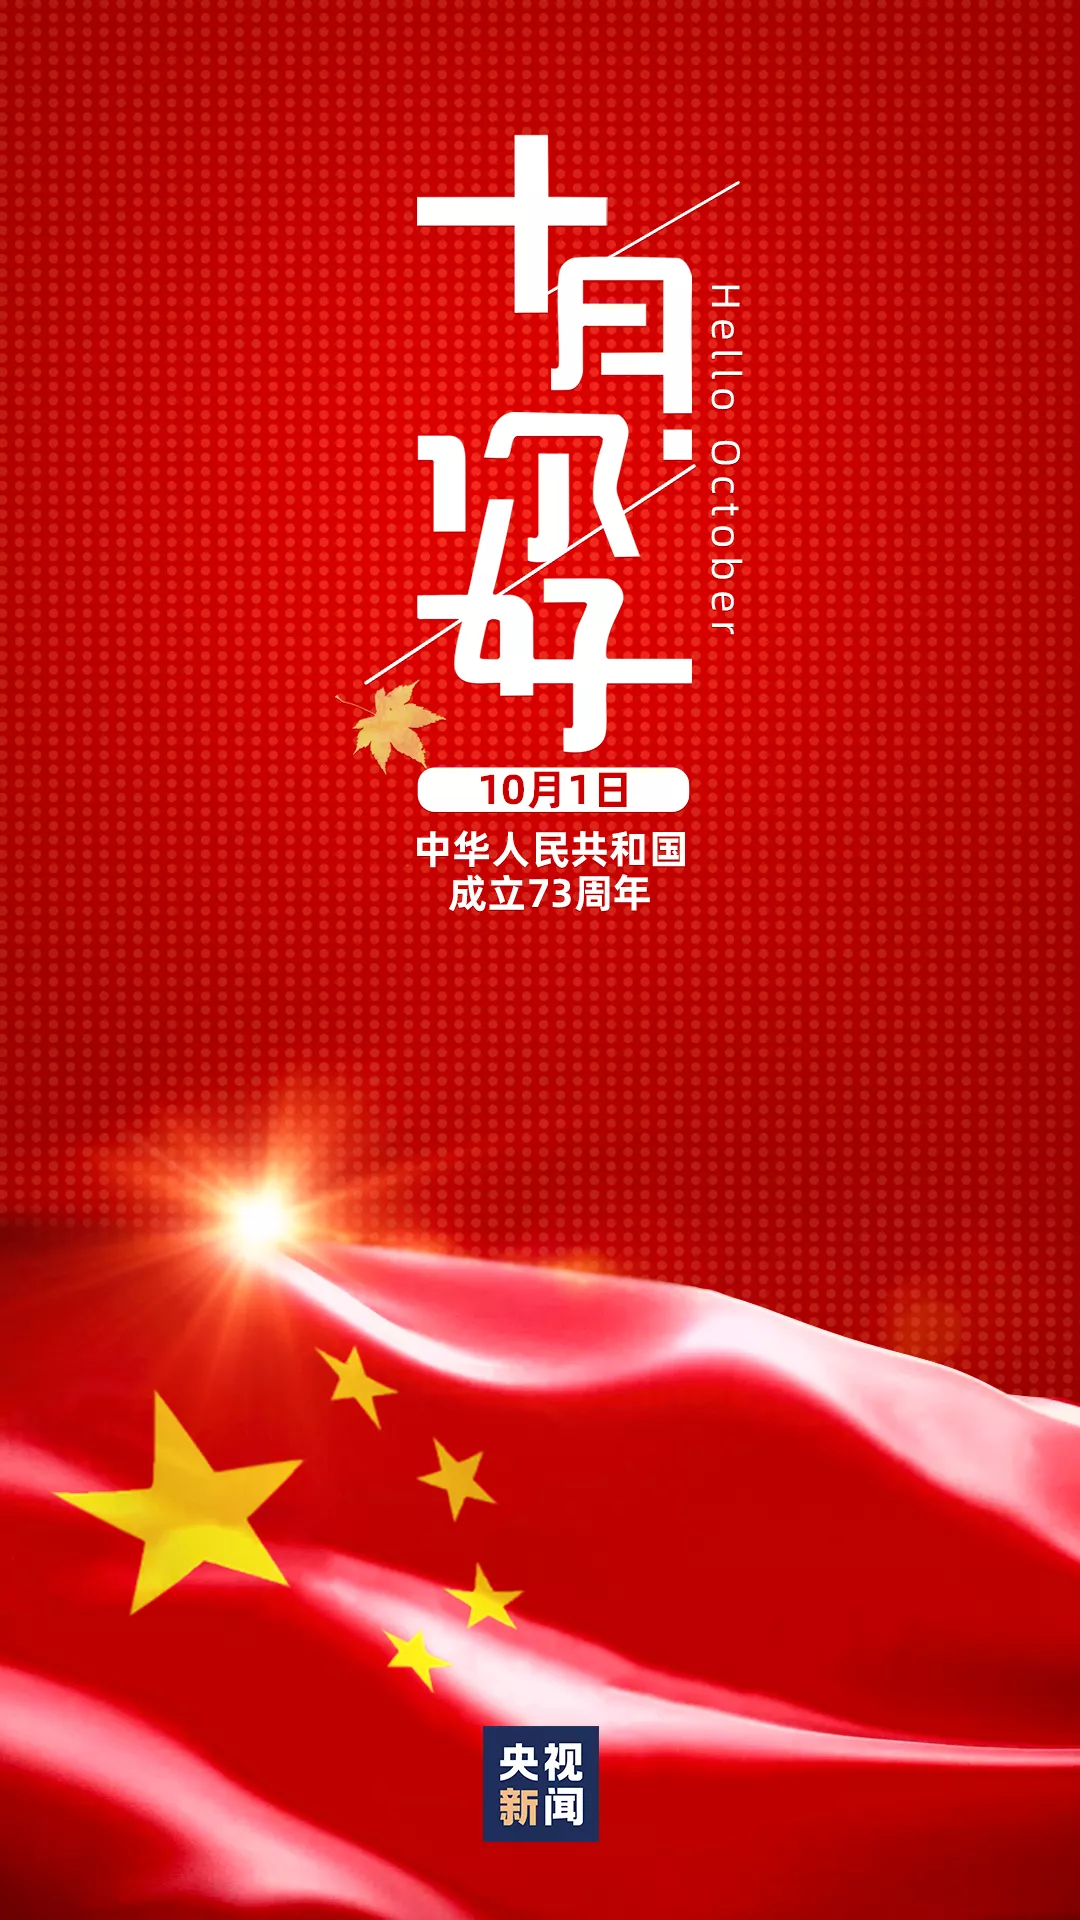 Avviso di festa nazionale da Tianjin JieYa